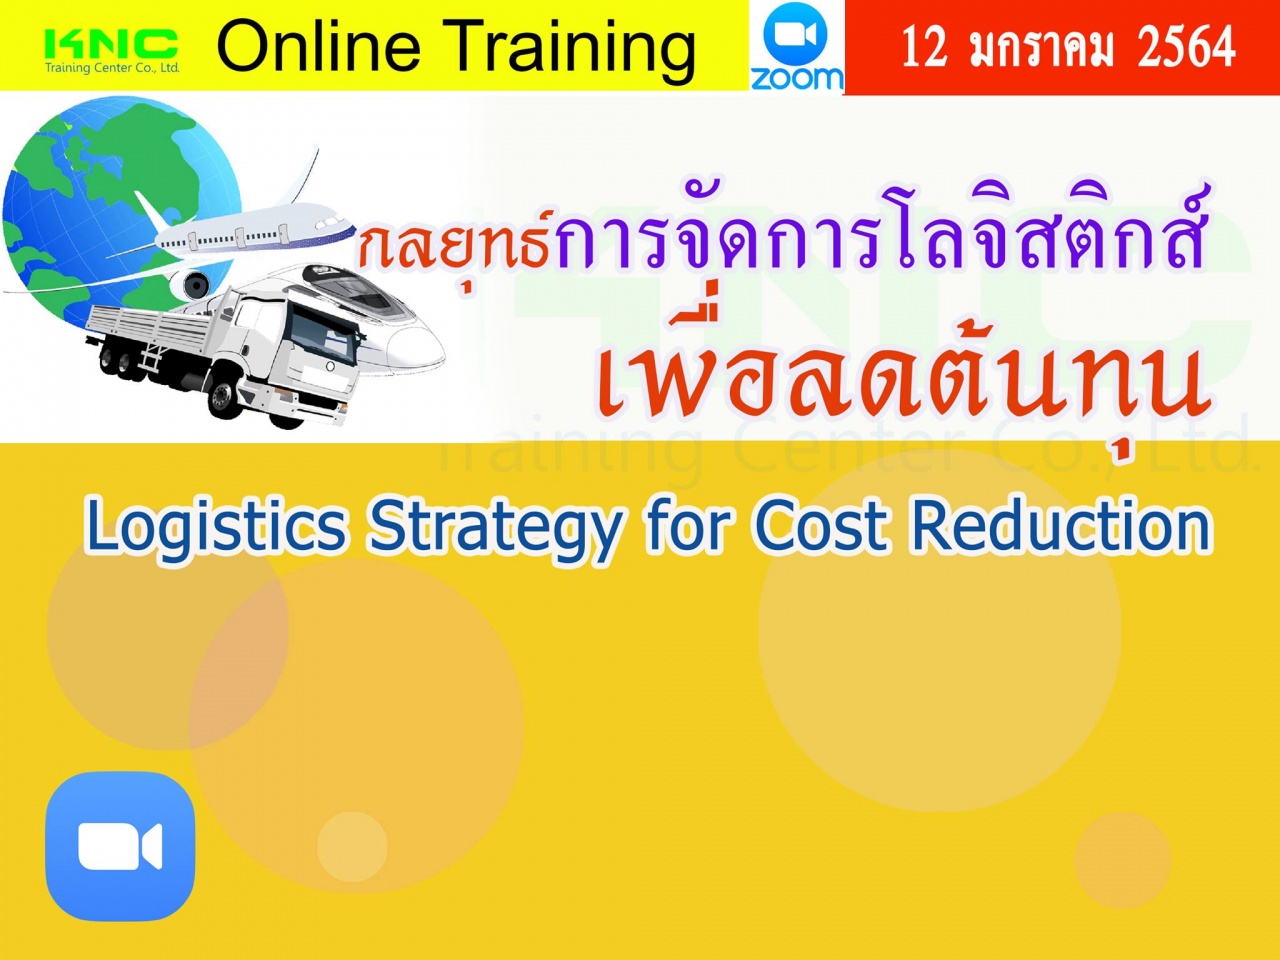 สัมมนา Online : กลยุทธ์การจัดการโลจิสติกส์เพื่อลดต้นทุน (Logistics Strategy for Cost Reduction)